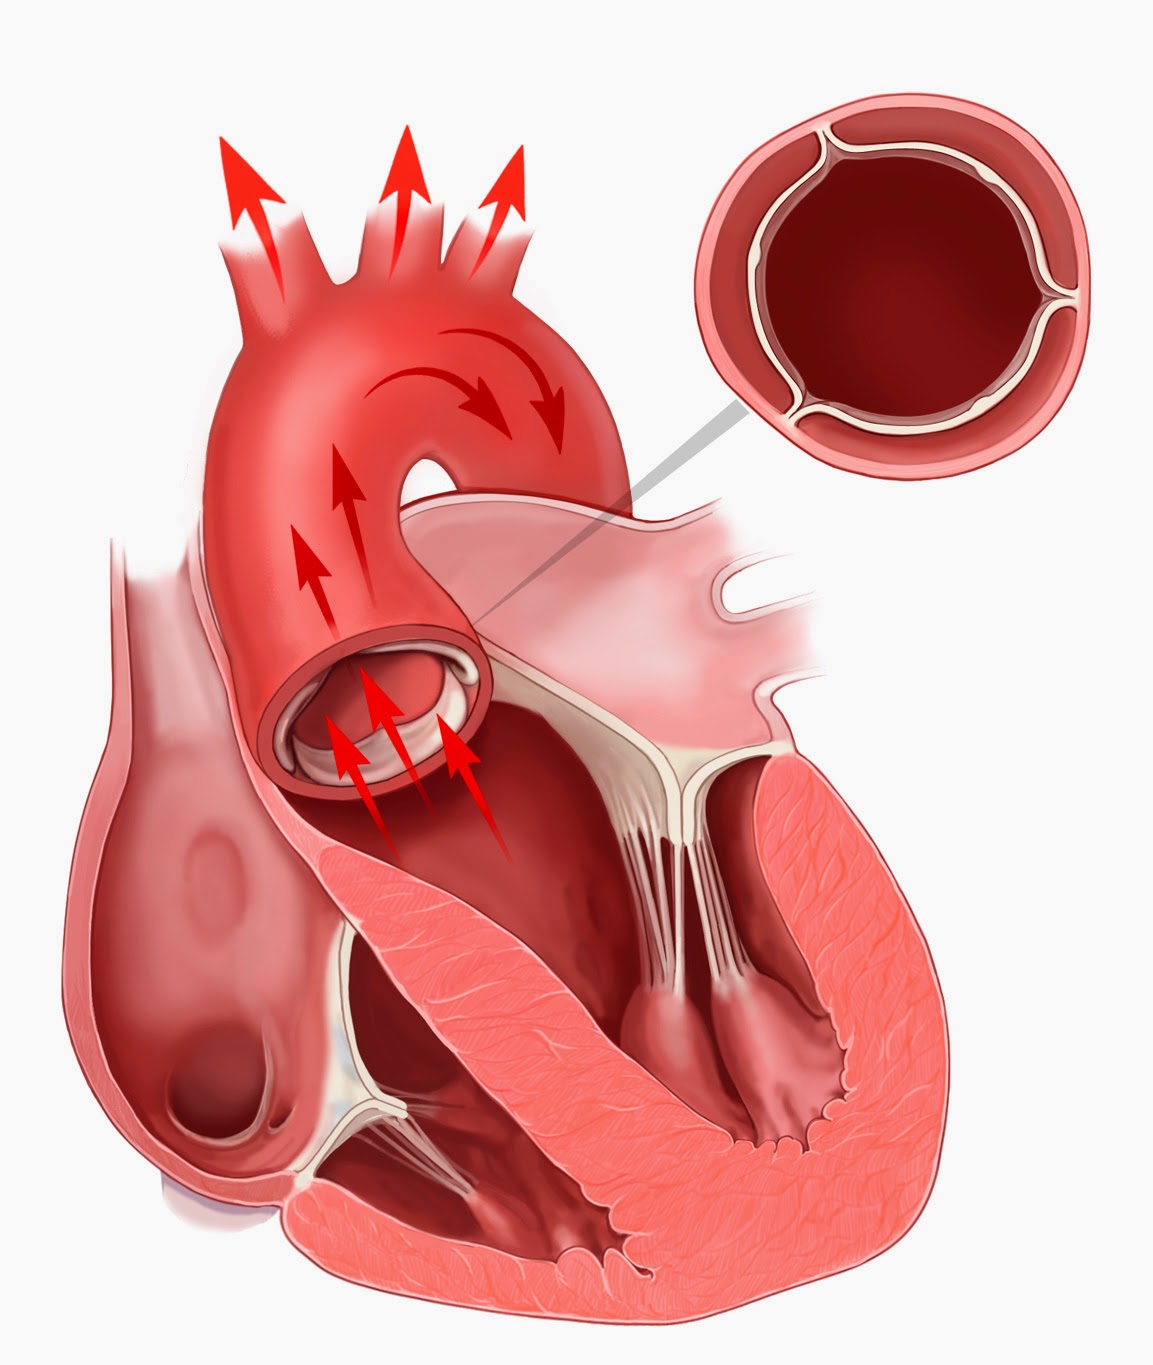 Поражение митрального клапана. Метоальгыц аортальный клапаны. Стеноз митрального и аортального клапана. Порок сердца стеноз аортального клапана. Аортальный клапан сердца.